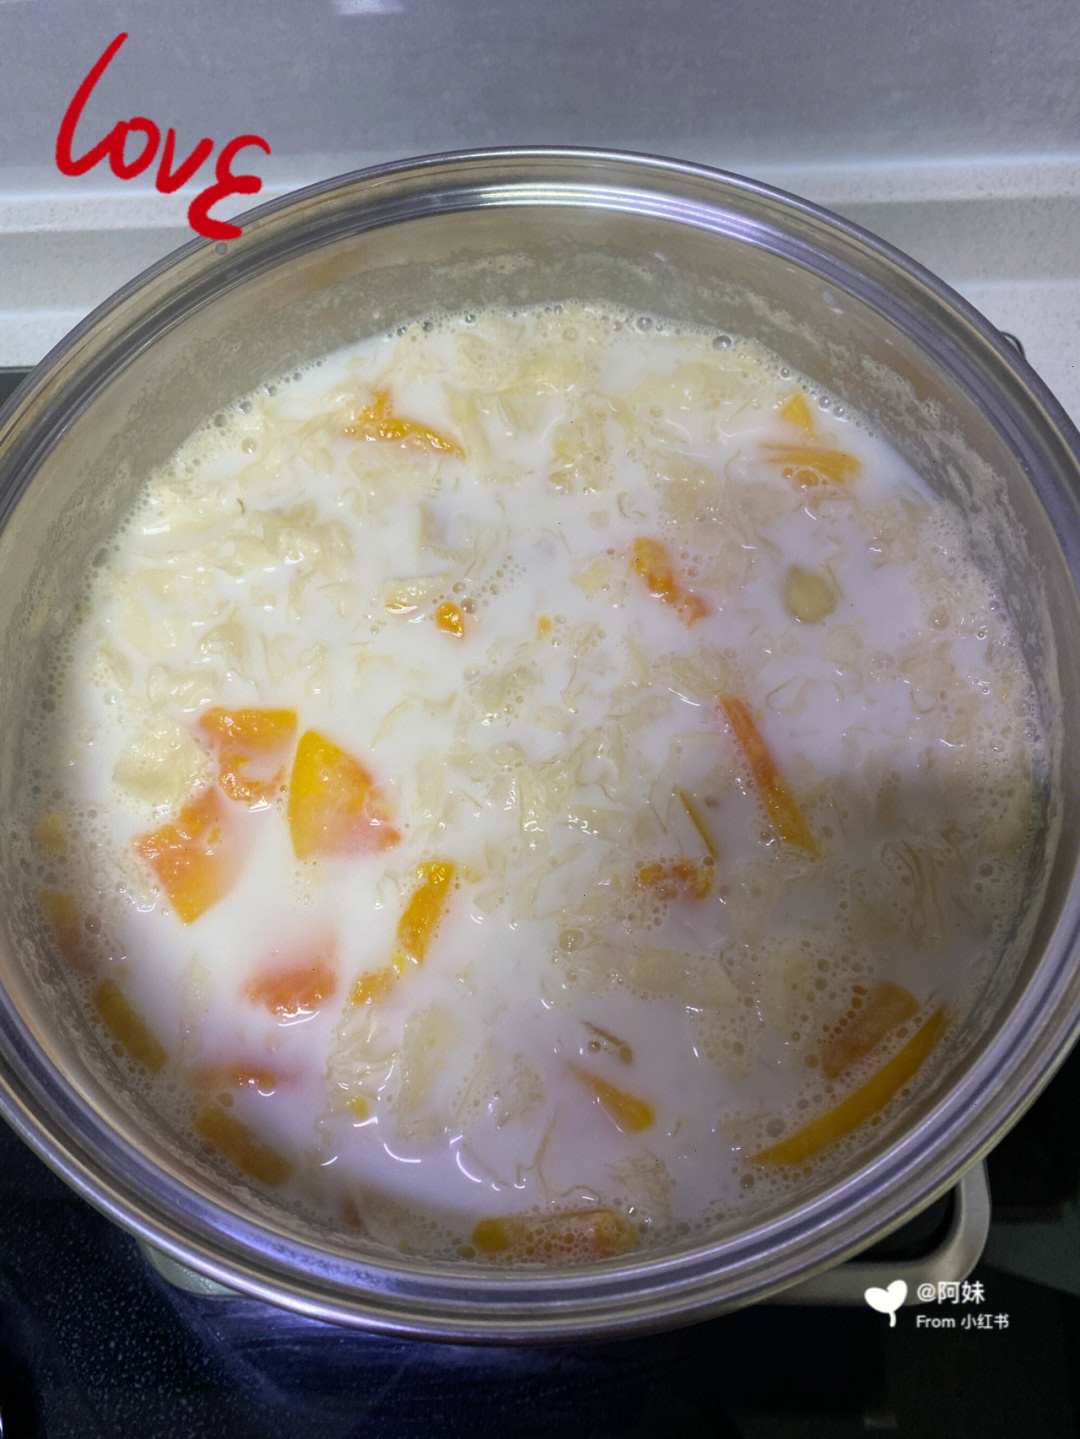 刚炖出来直接喝好喝很多哦03)食材:桃胶 皂角米 半个木瓜 银耳 牛奶